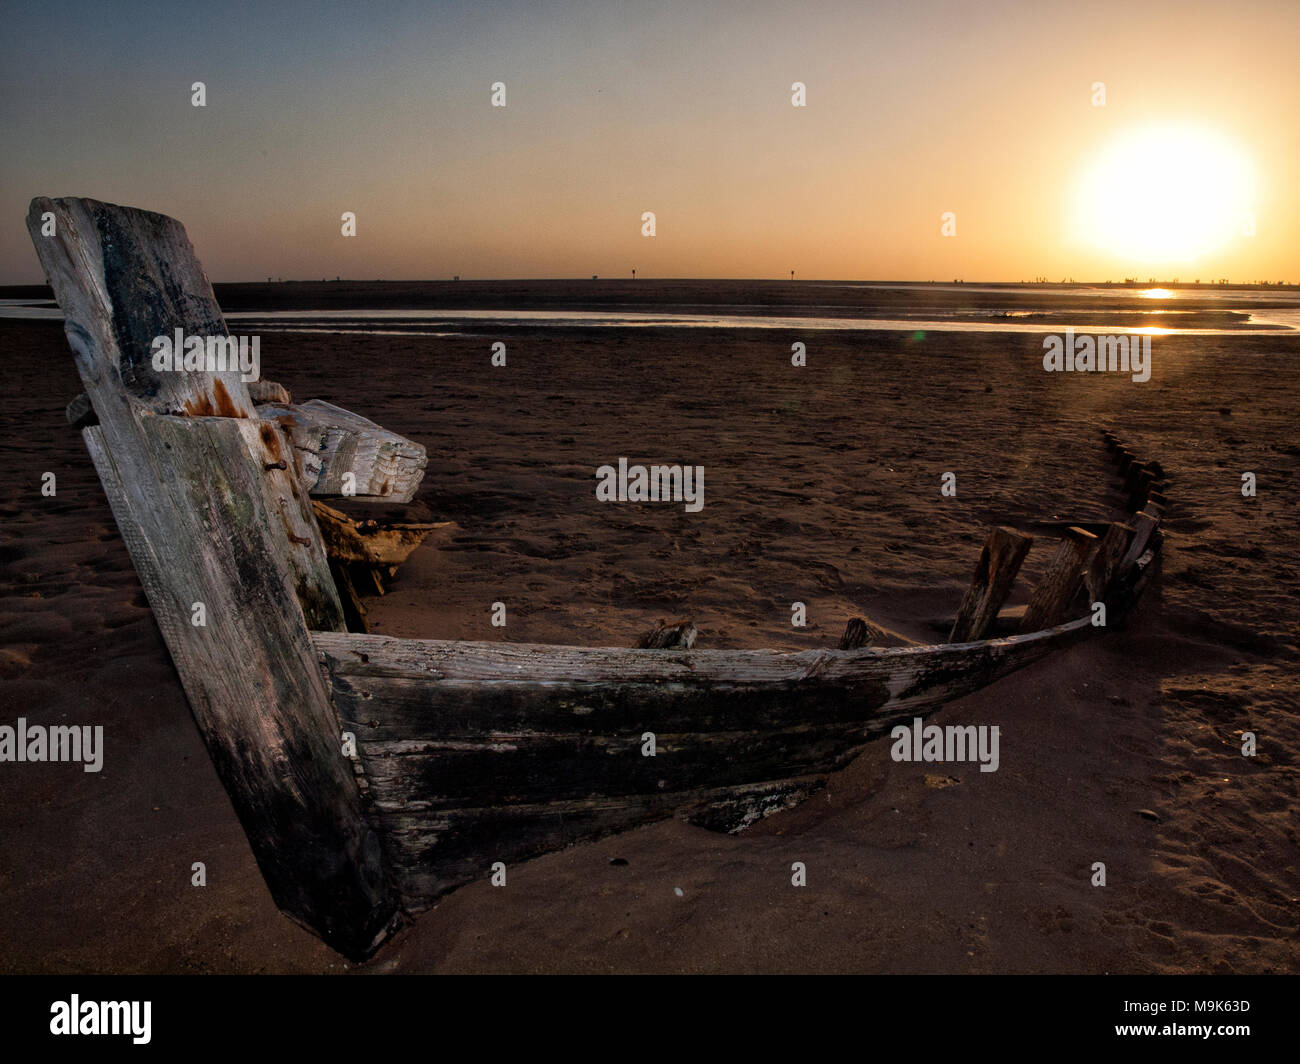 Barca abandonada en la orilla de la playa Stock Photo